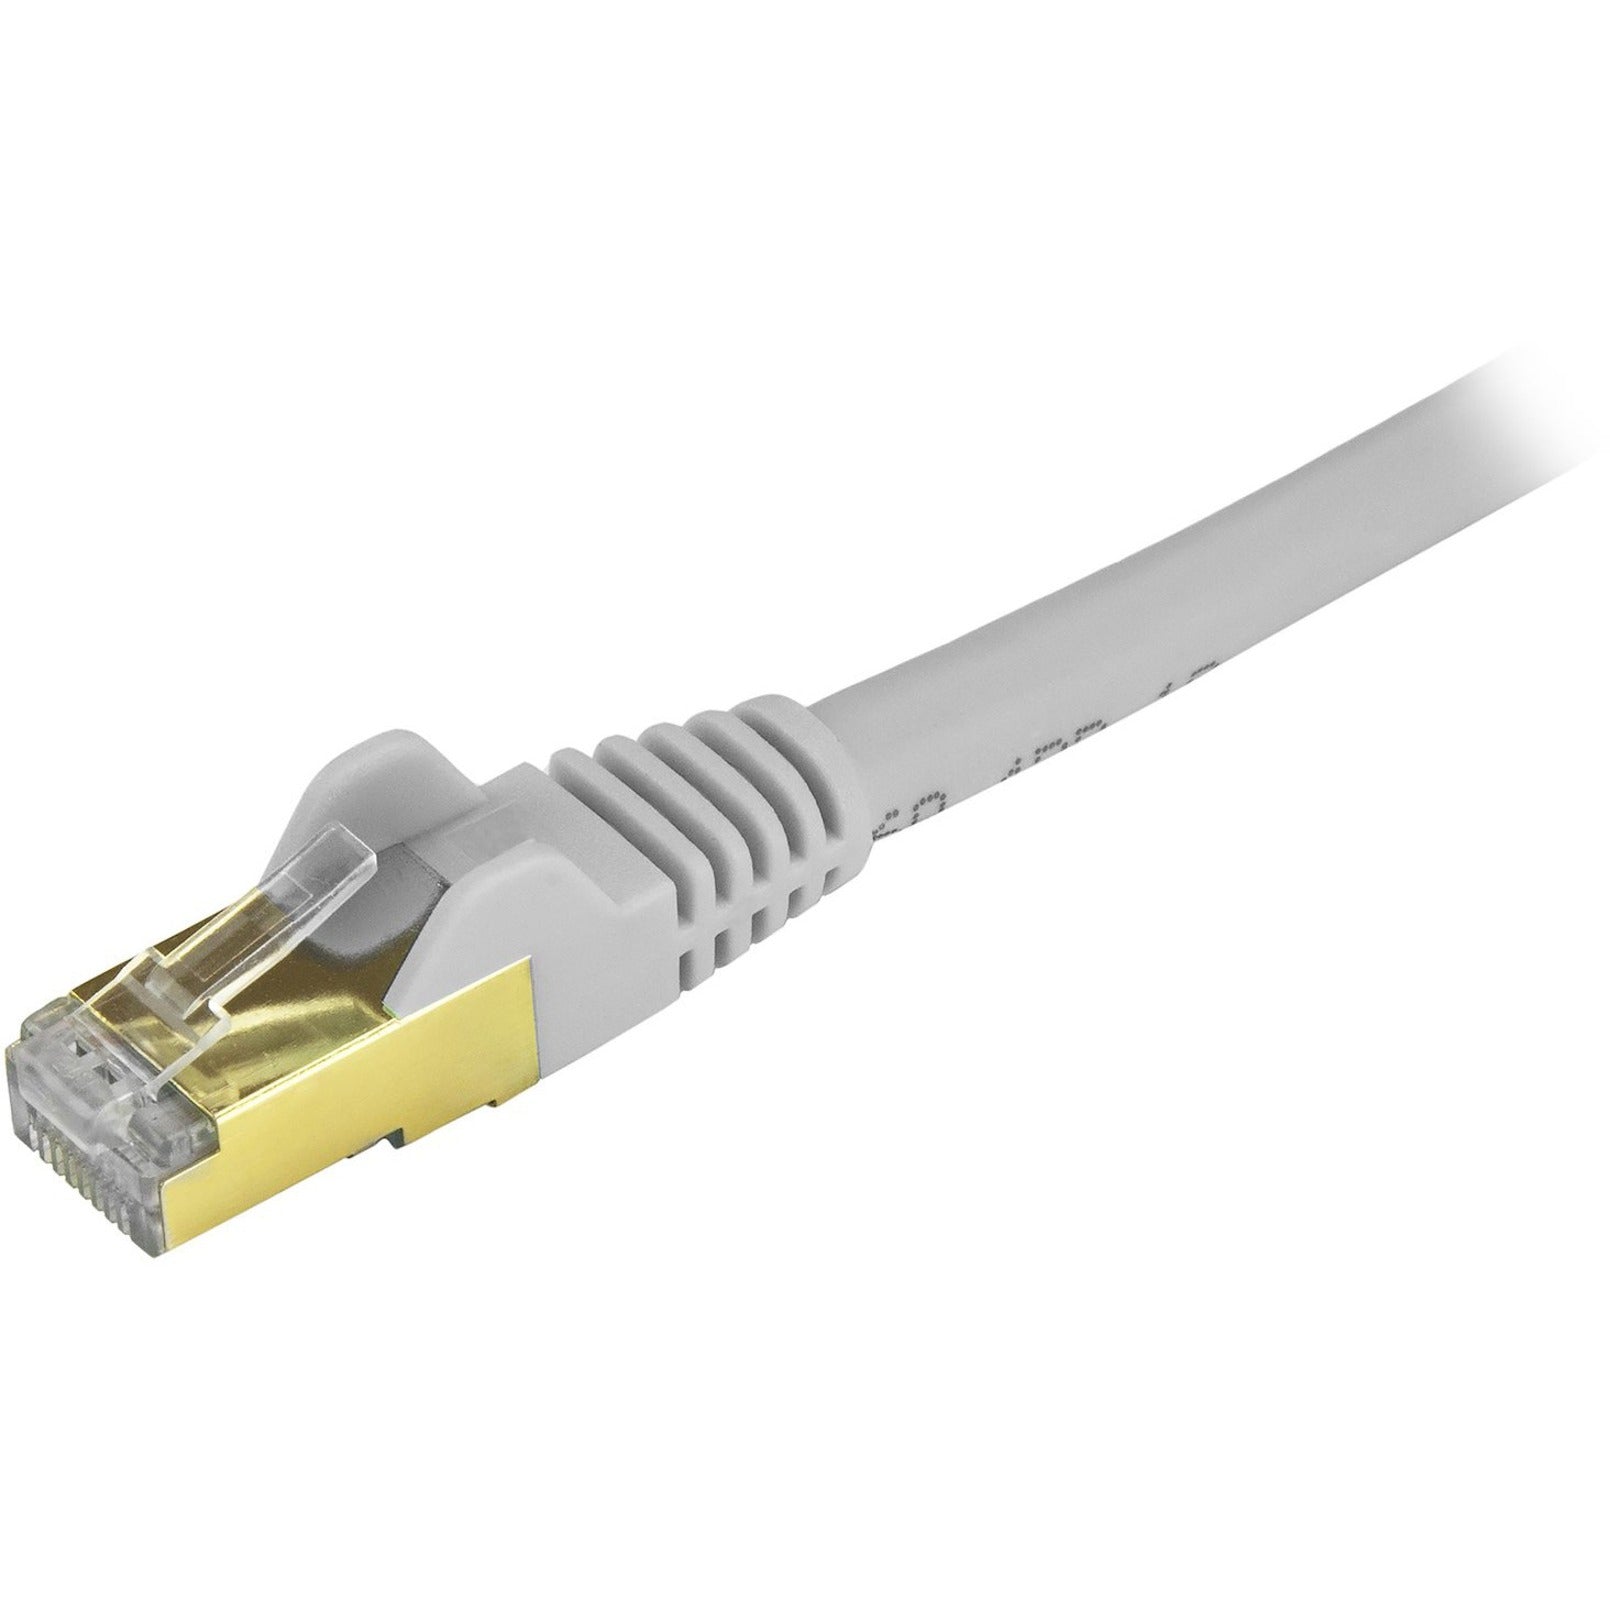 Startech.com C6ASPAT2GR Cat6a Ethernet Câble Patch - Blindé (STP) - 2 pieds Gris Snagless RJ45 Cordon Ethernet